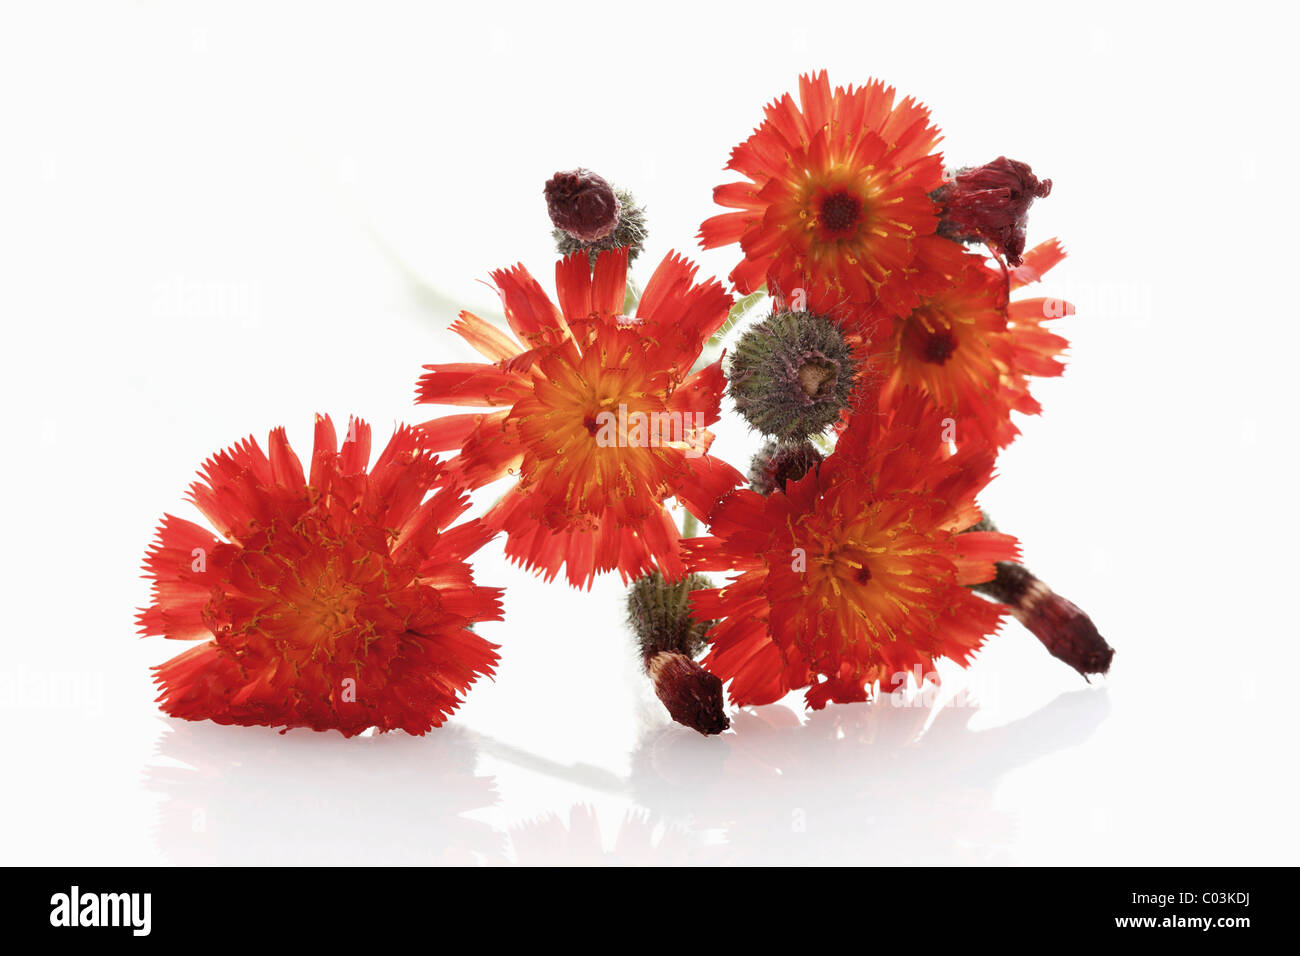 Fox-and-cubs or Orange Hawkweed (Hieracium aurantiacum) Stock Photo